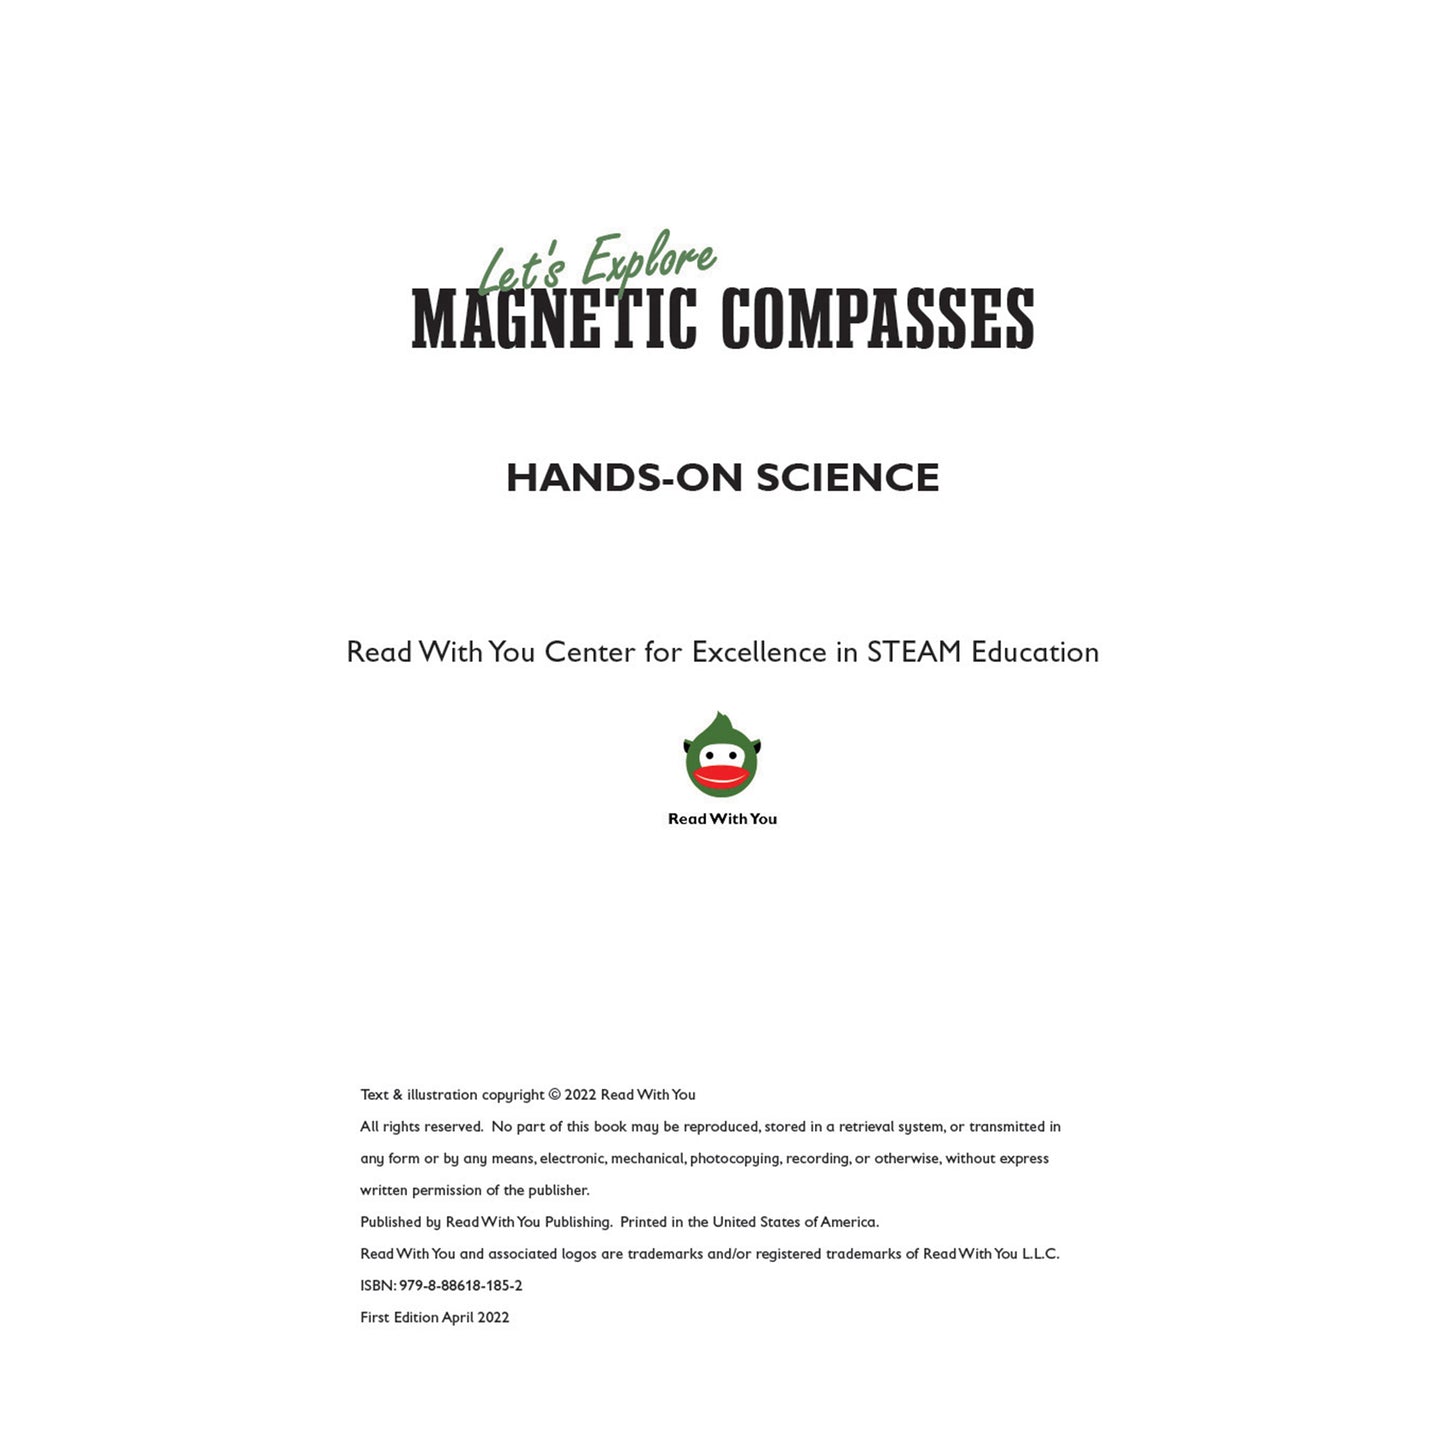 Let's Explore Magnetic Compasses